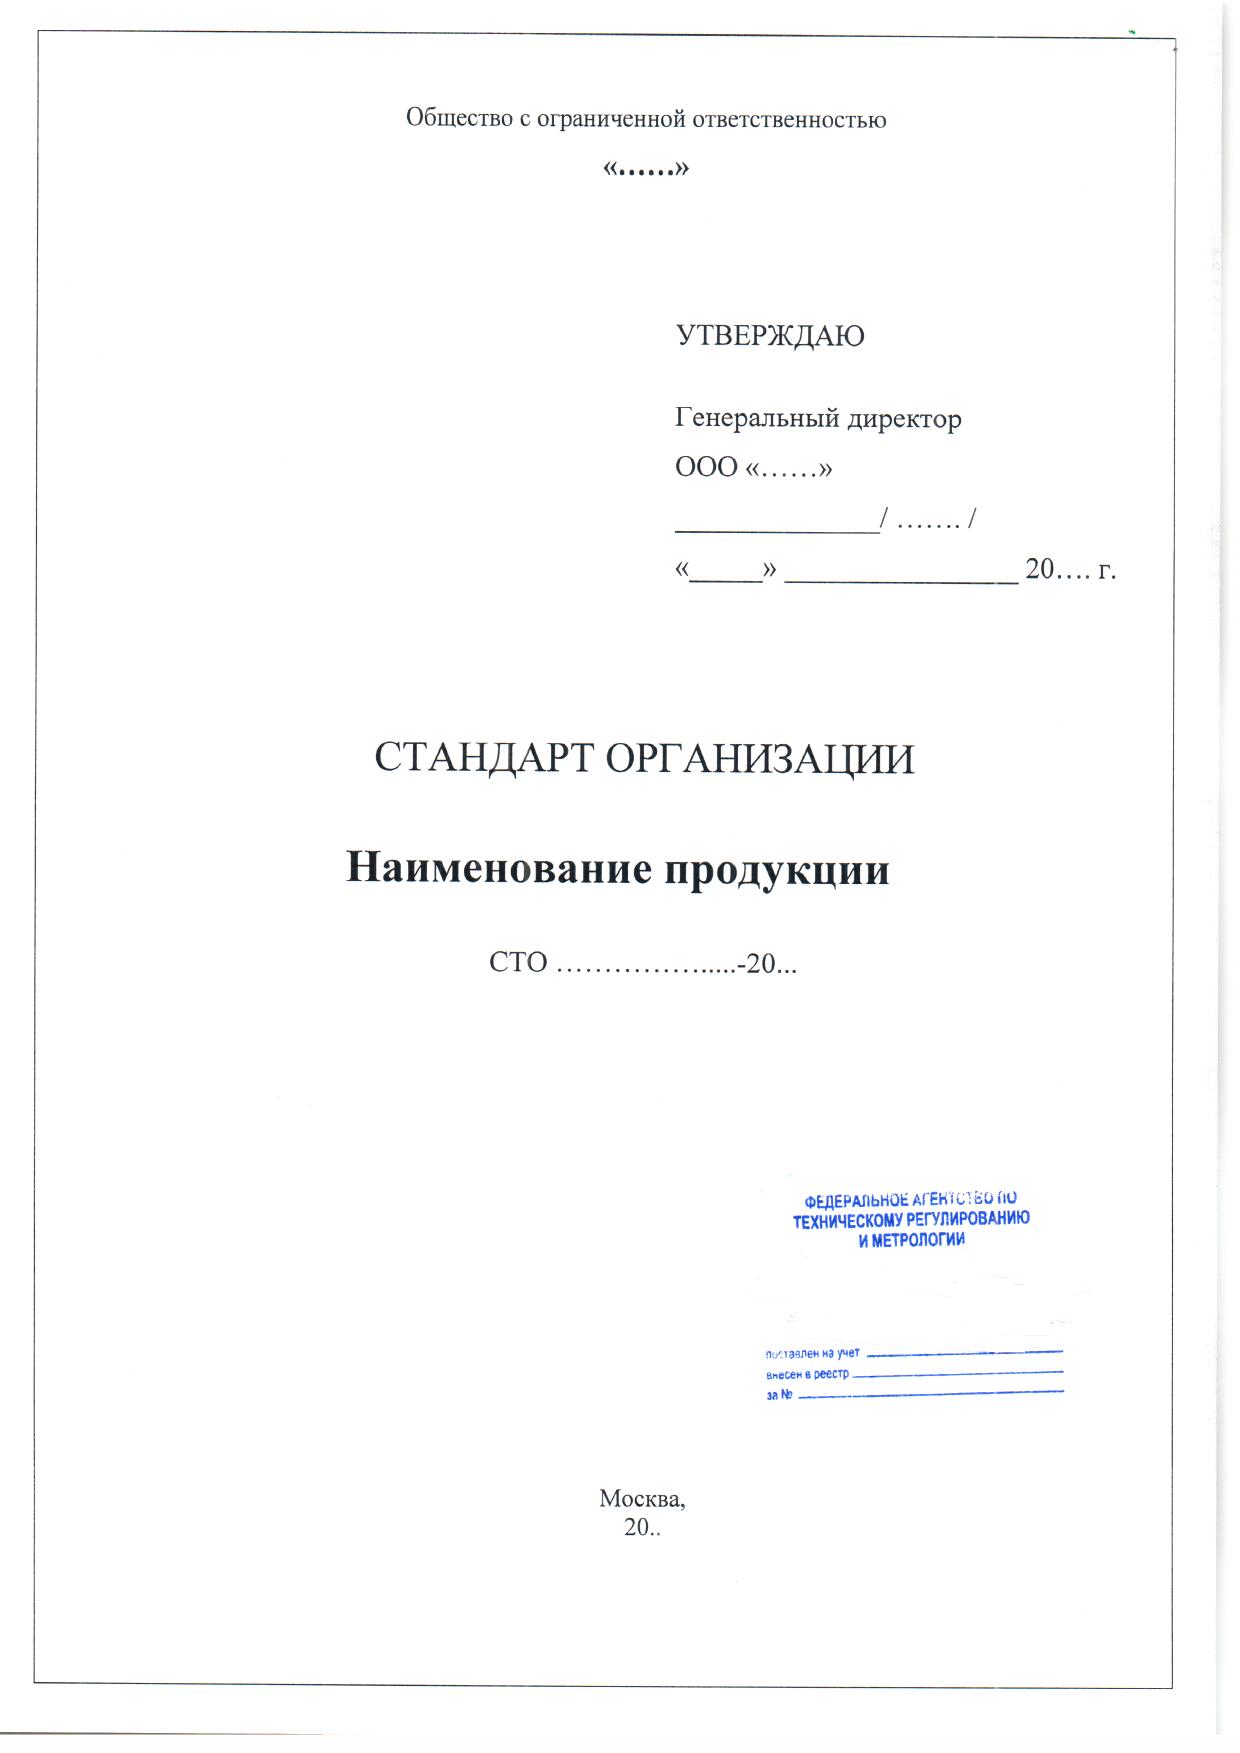 Регистрация стандарта организации (СТО)